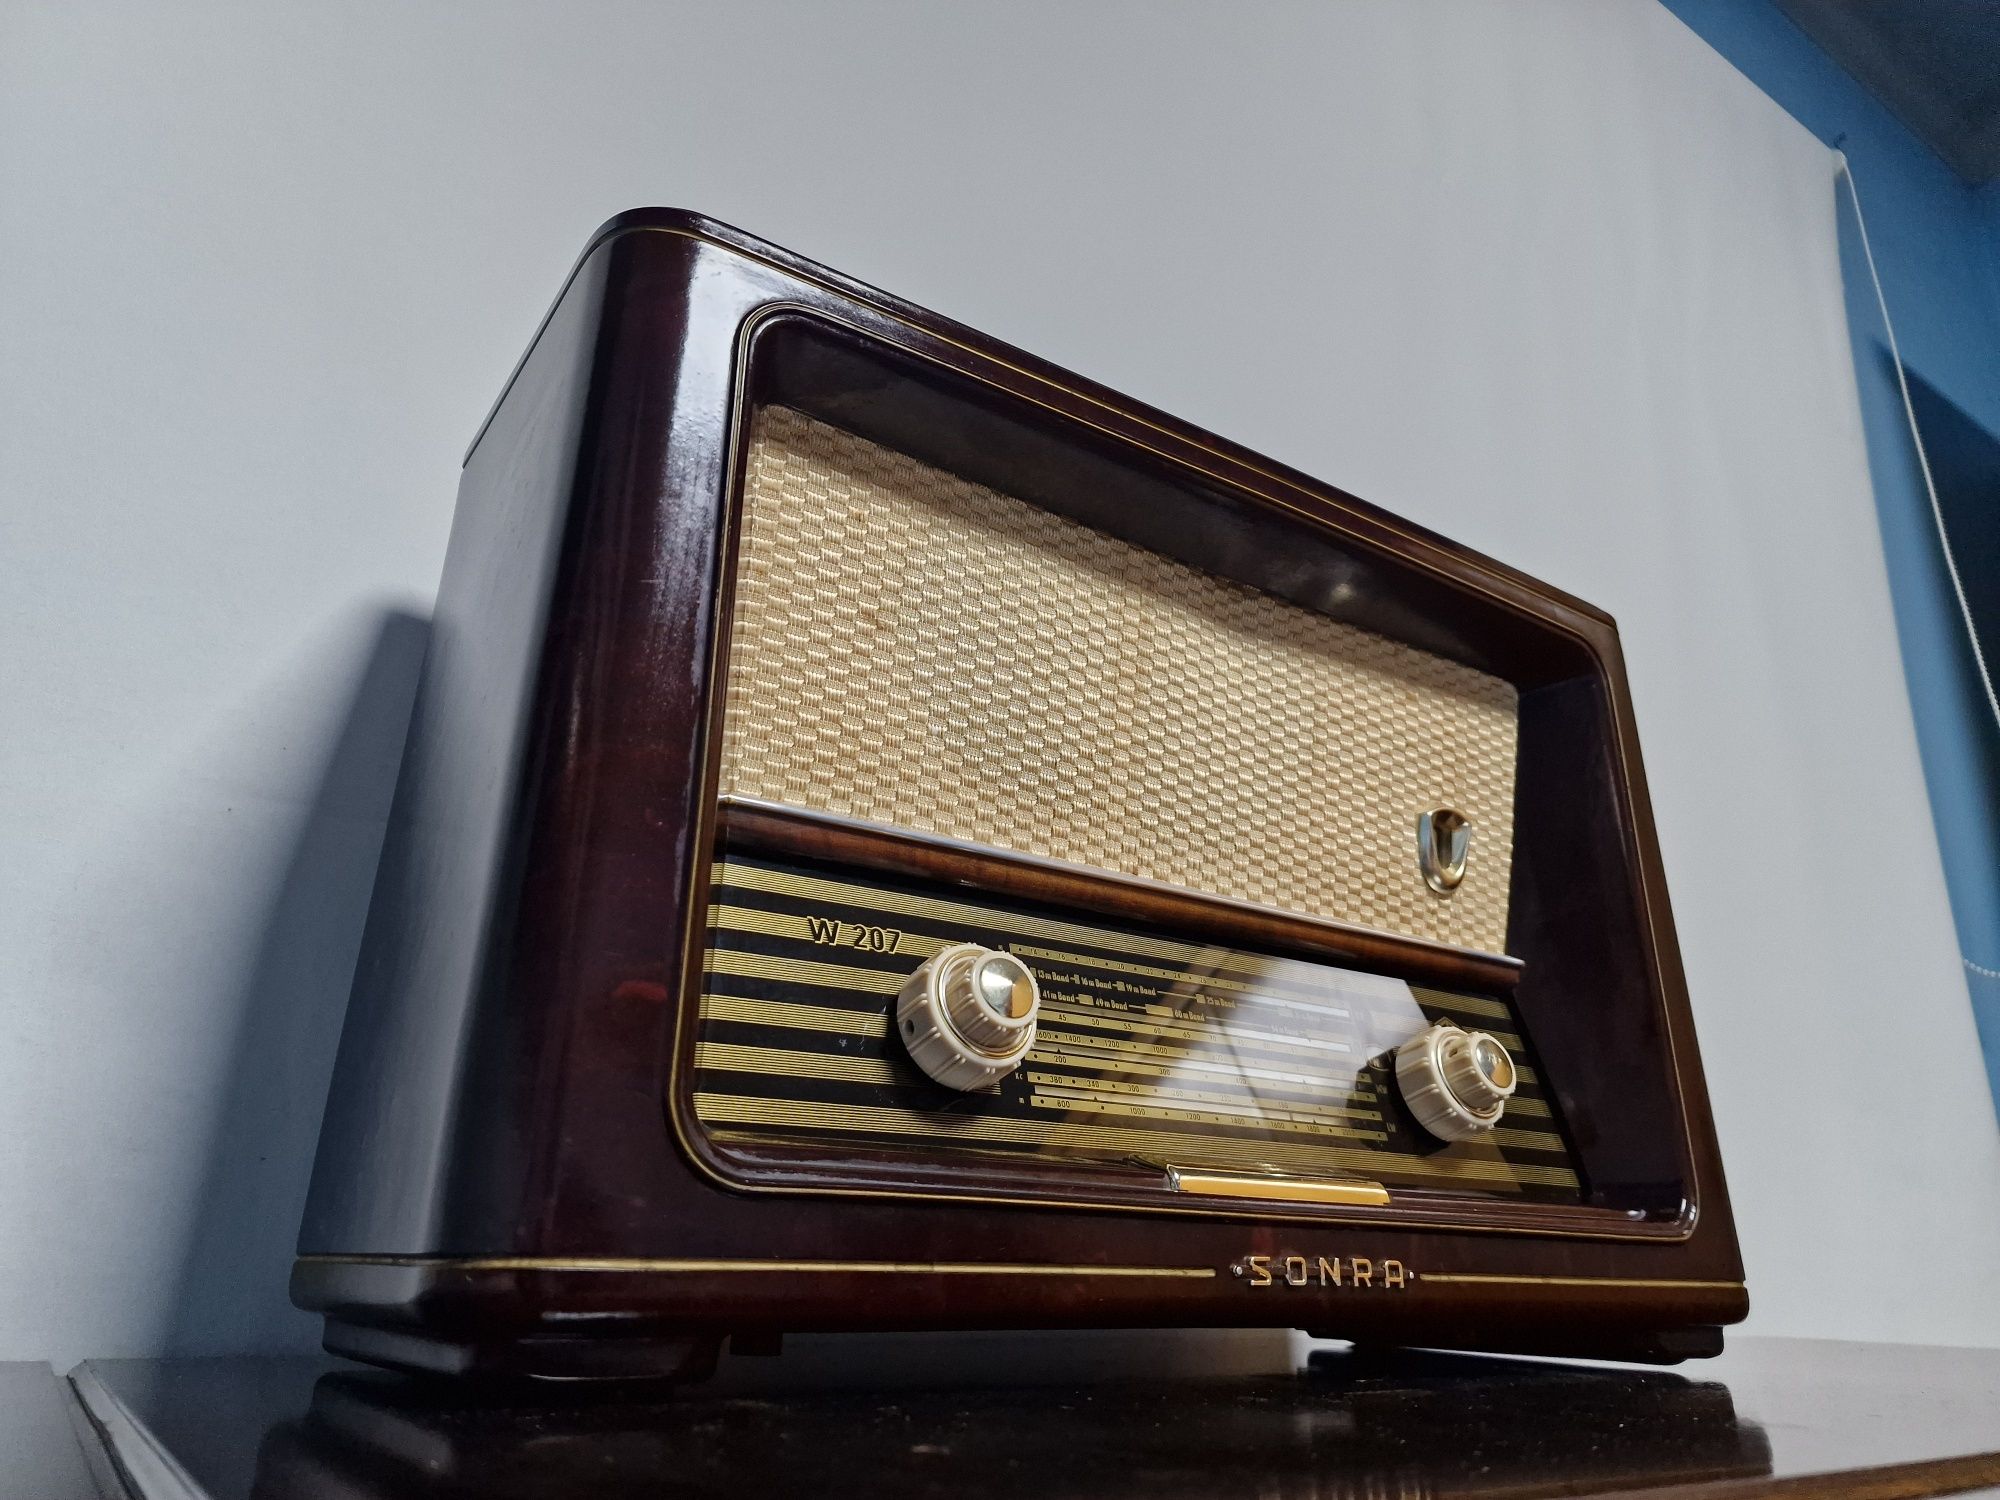 Rádio antigo reparado R-F-T